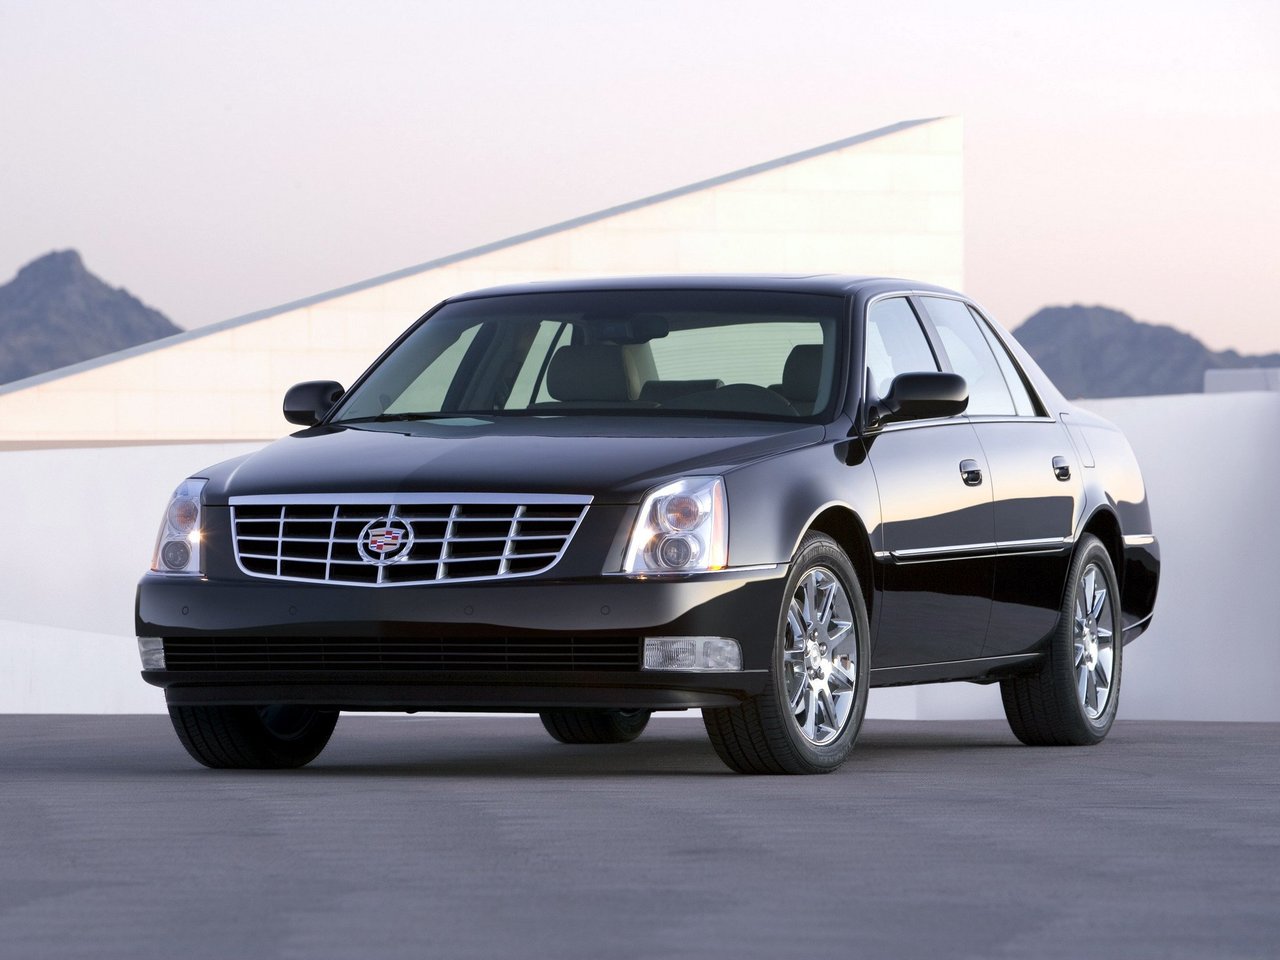 Расход газа одной комплектации седана Cadillac DTS. Разница стоимости заправки газом и бензином. Автономный пробег до и после установки ГБО.